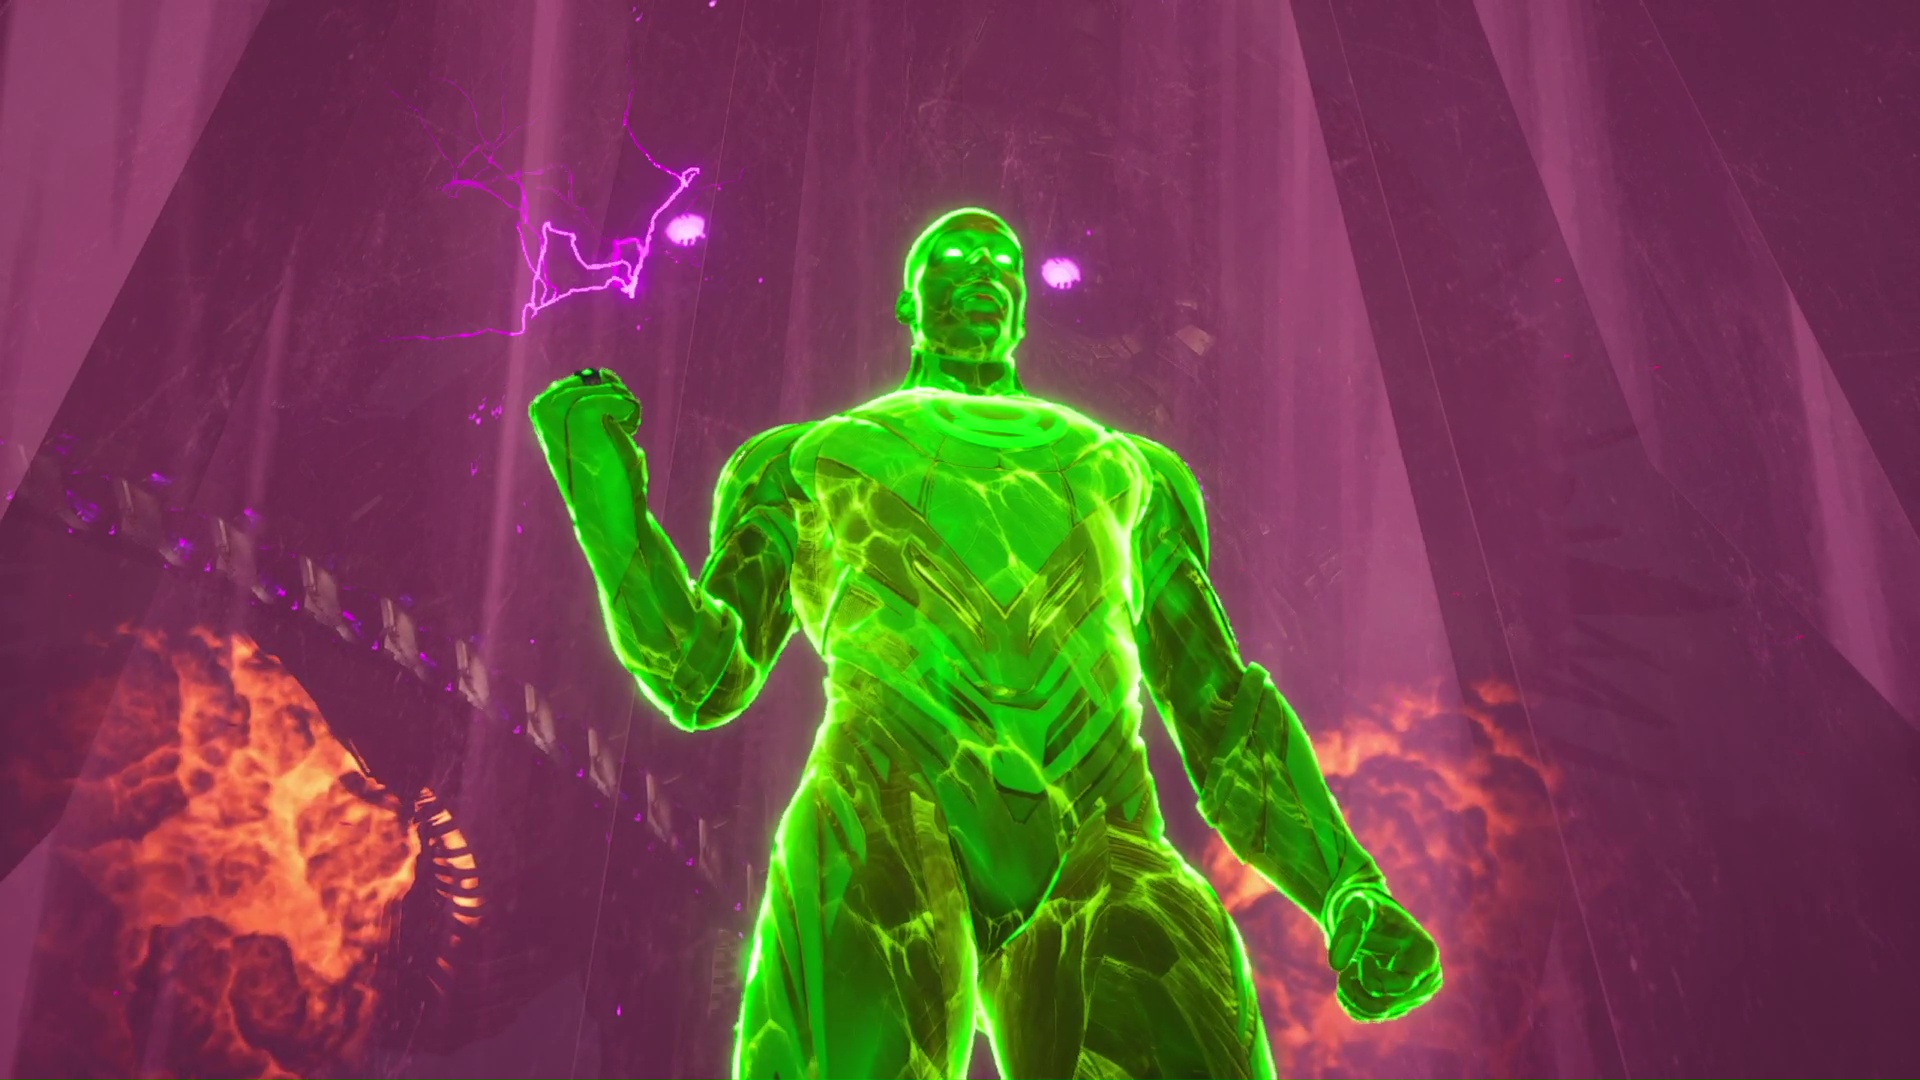 Sebevražedný oddíl zabít Ligu spravedlnosti Green Lantern